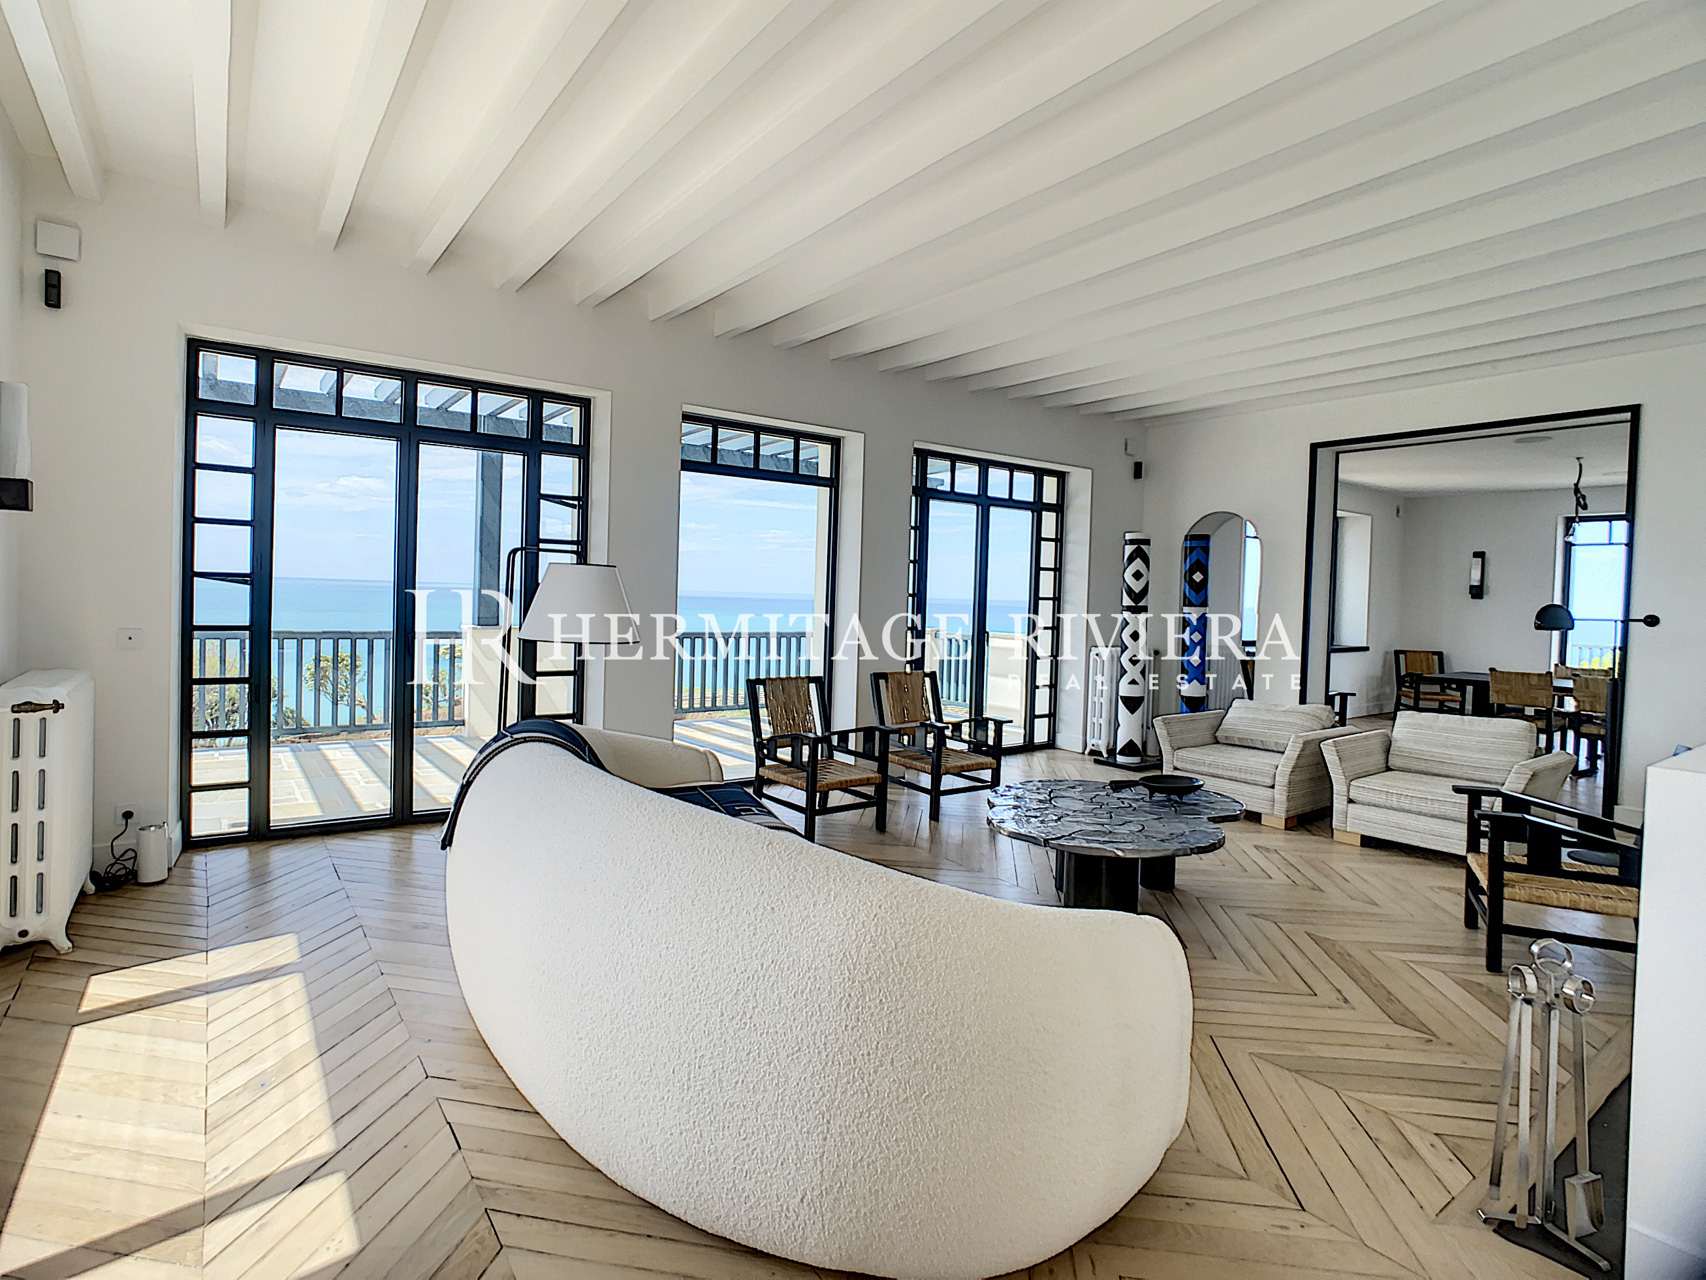 Magnifique villa près de la plage d'Erretegia (image 3)